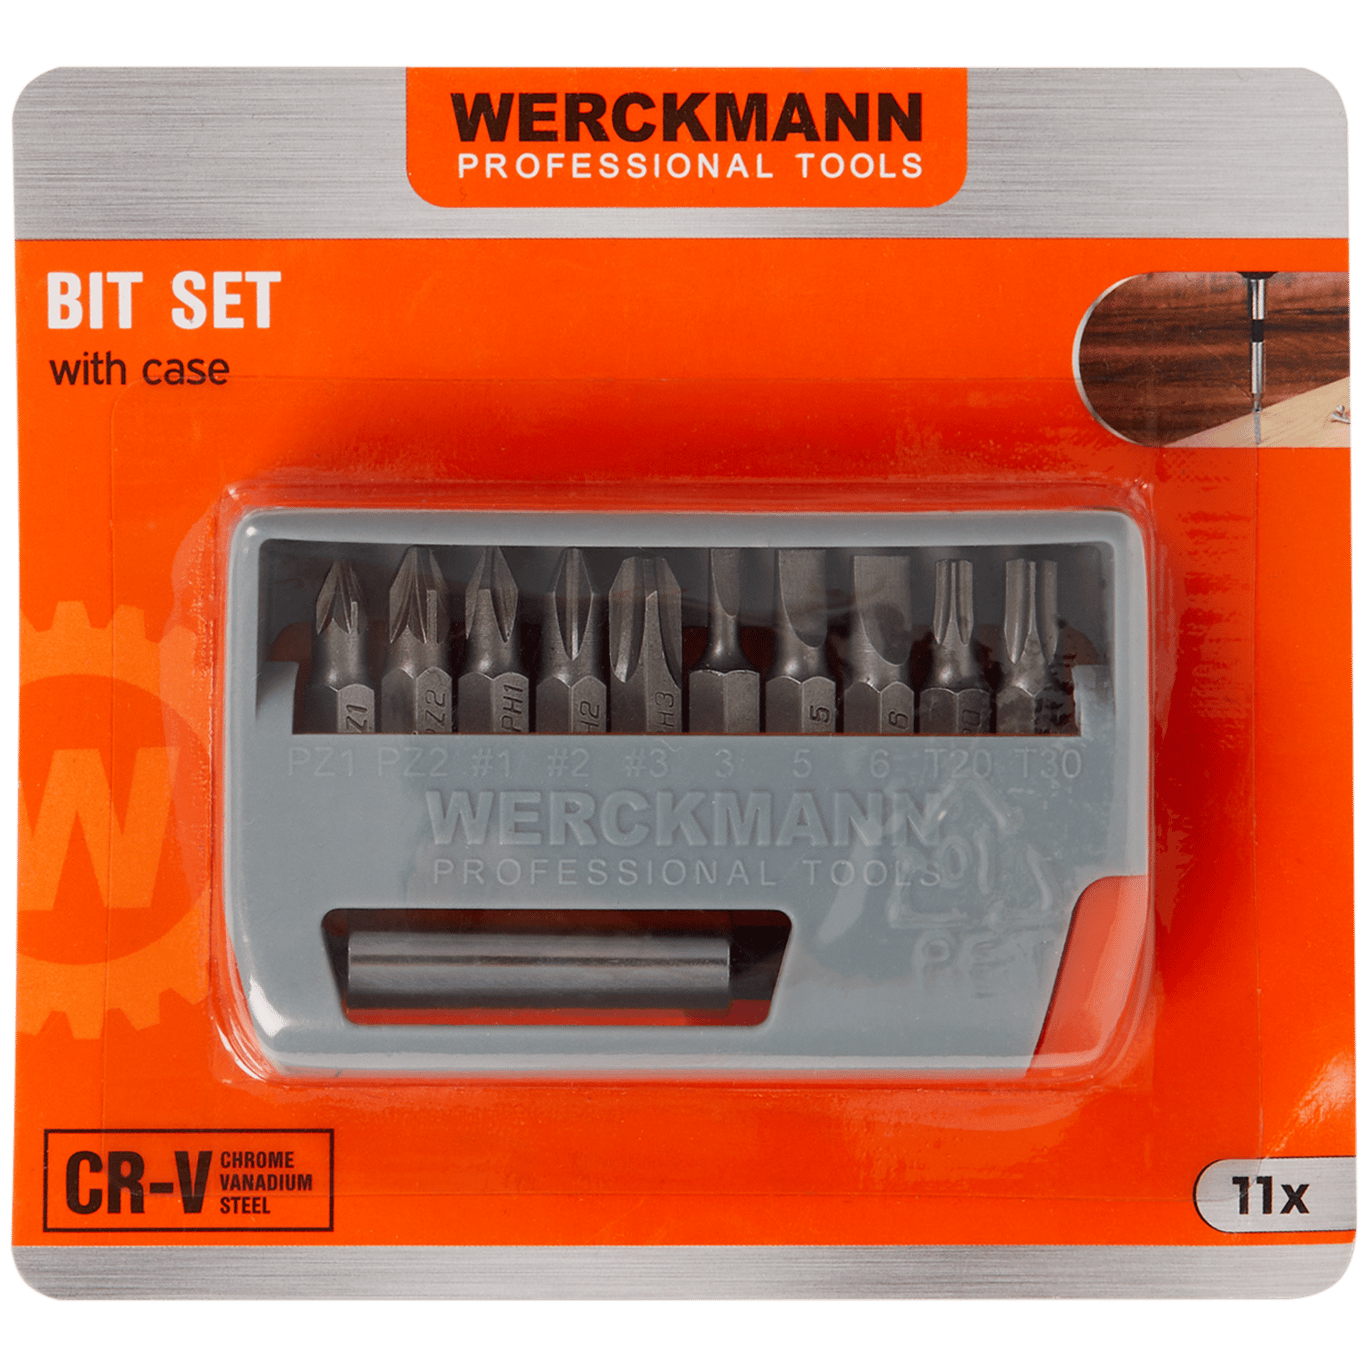 Zestaw bitów Werckmann